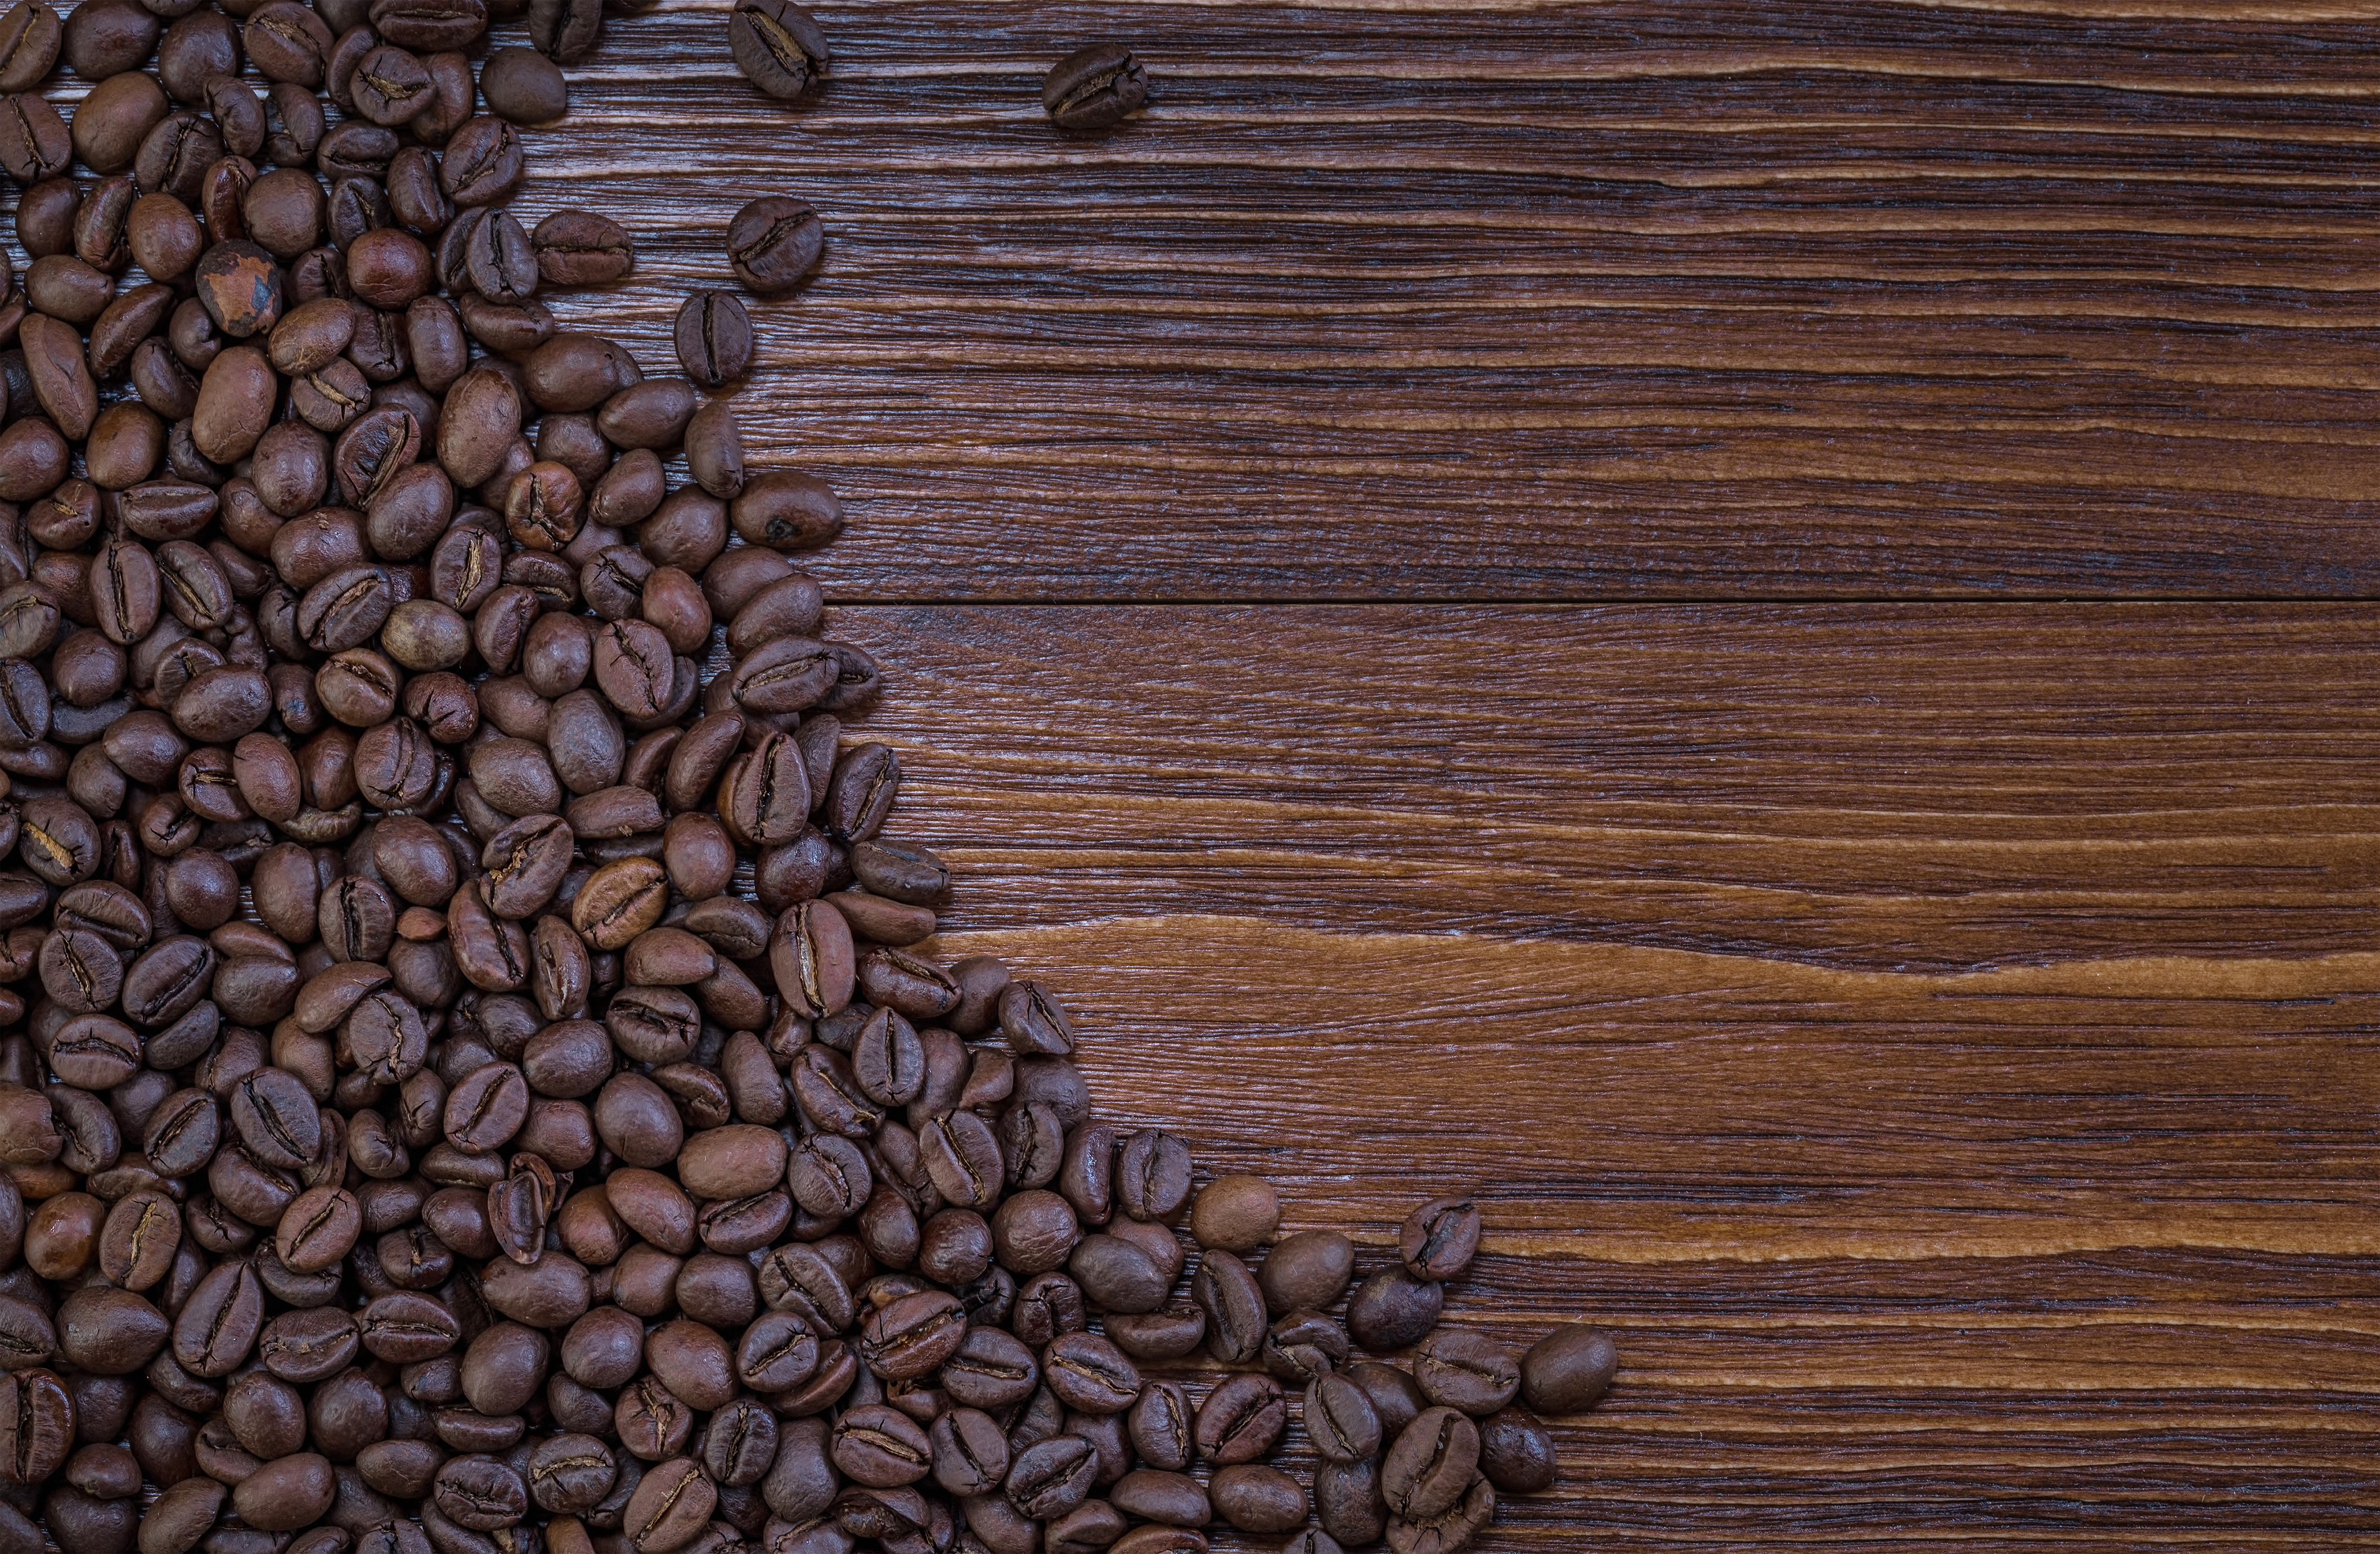 Tải miễn phí hình nền gỗ với hình ảnh cà phê đậu nành tuyệt đẹp, tạo nên không gian ấm áp và gần gũi. Thách thức bạn tới sự cân bằng giữa công việc và giải trí. Hãy tải xuống ngay!